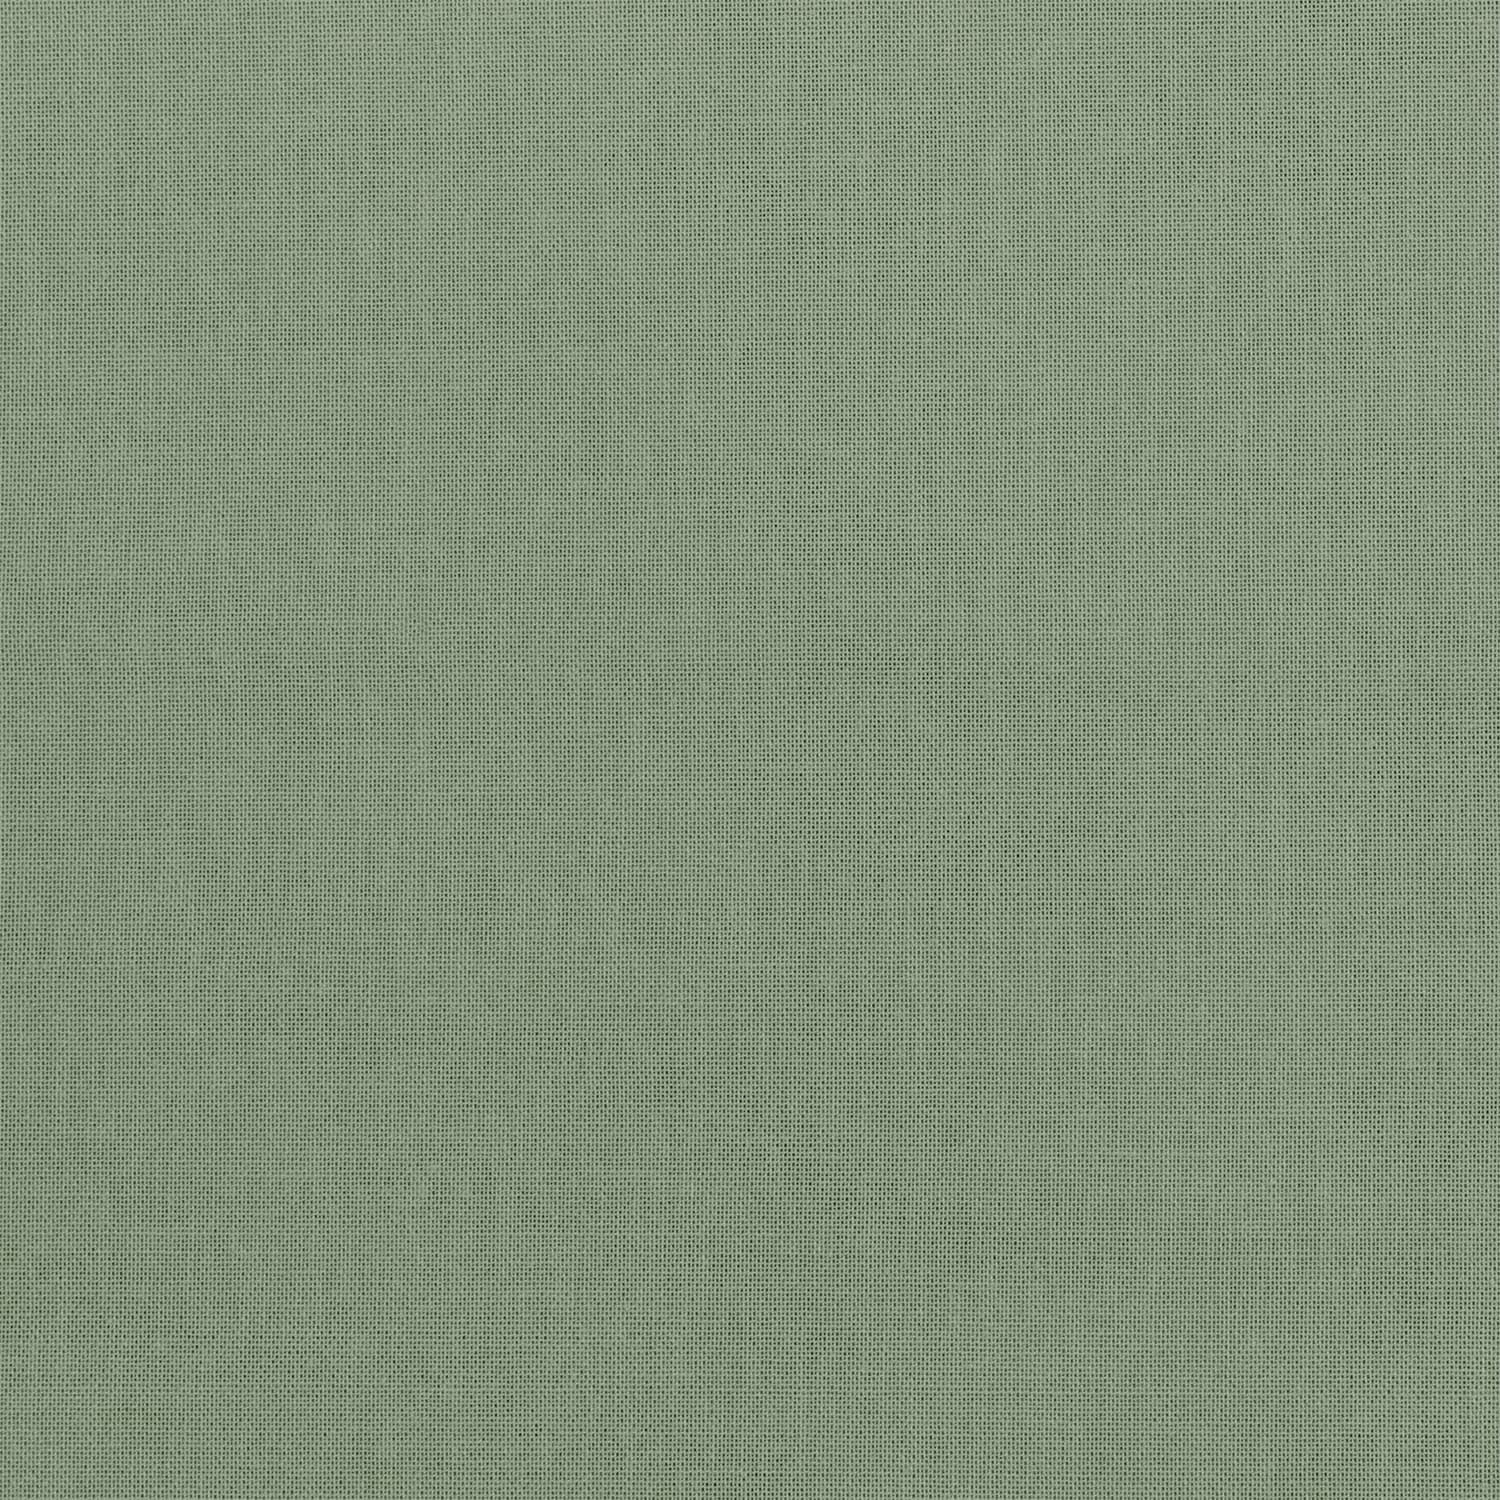 Numero 74 - Star Cushion  - Thai Cotton - Sage Green - S049